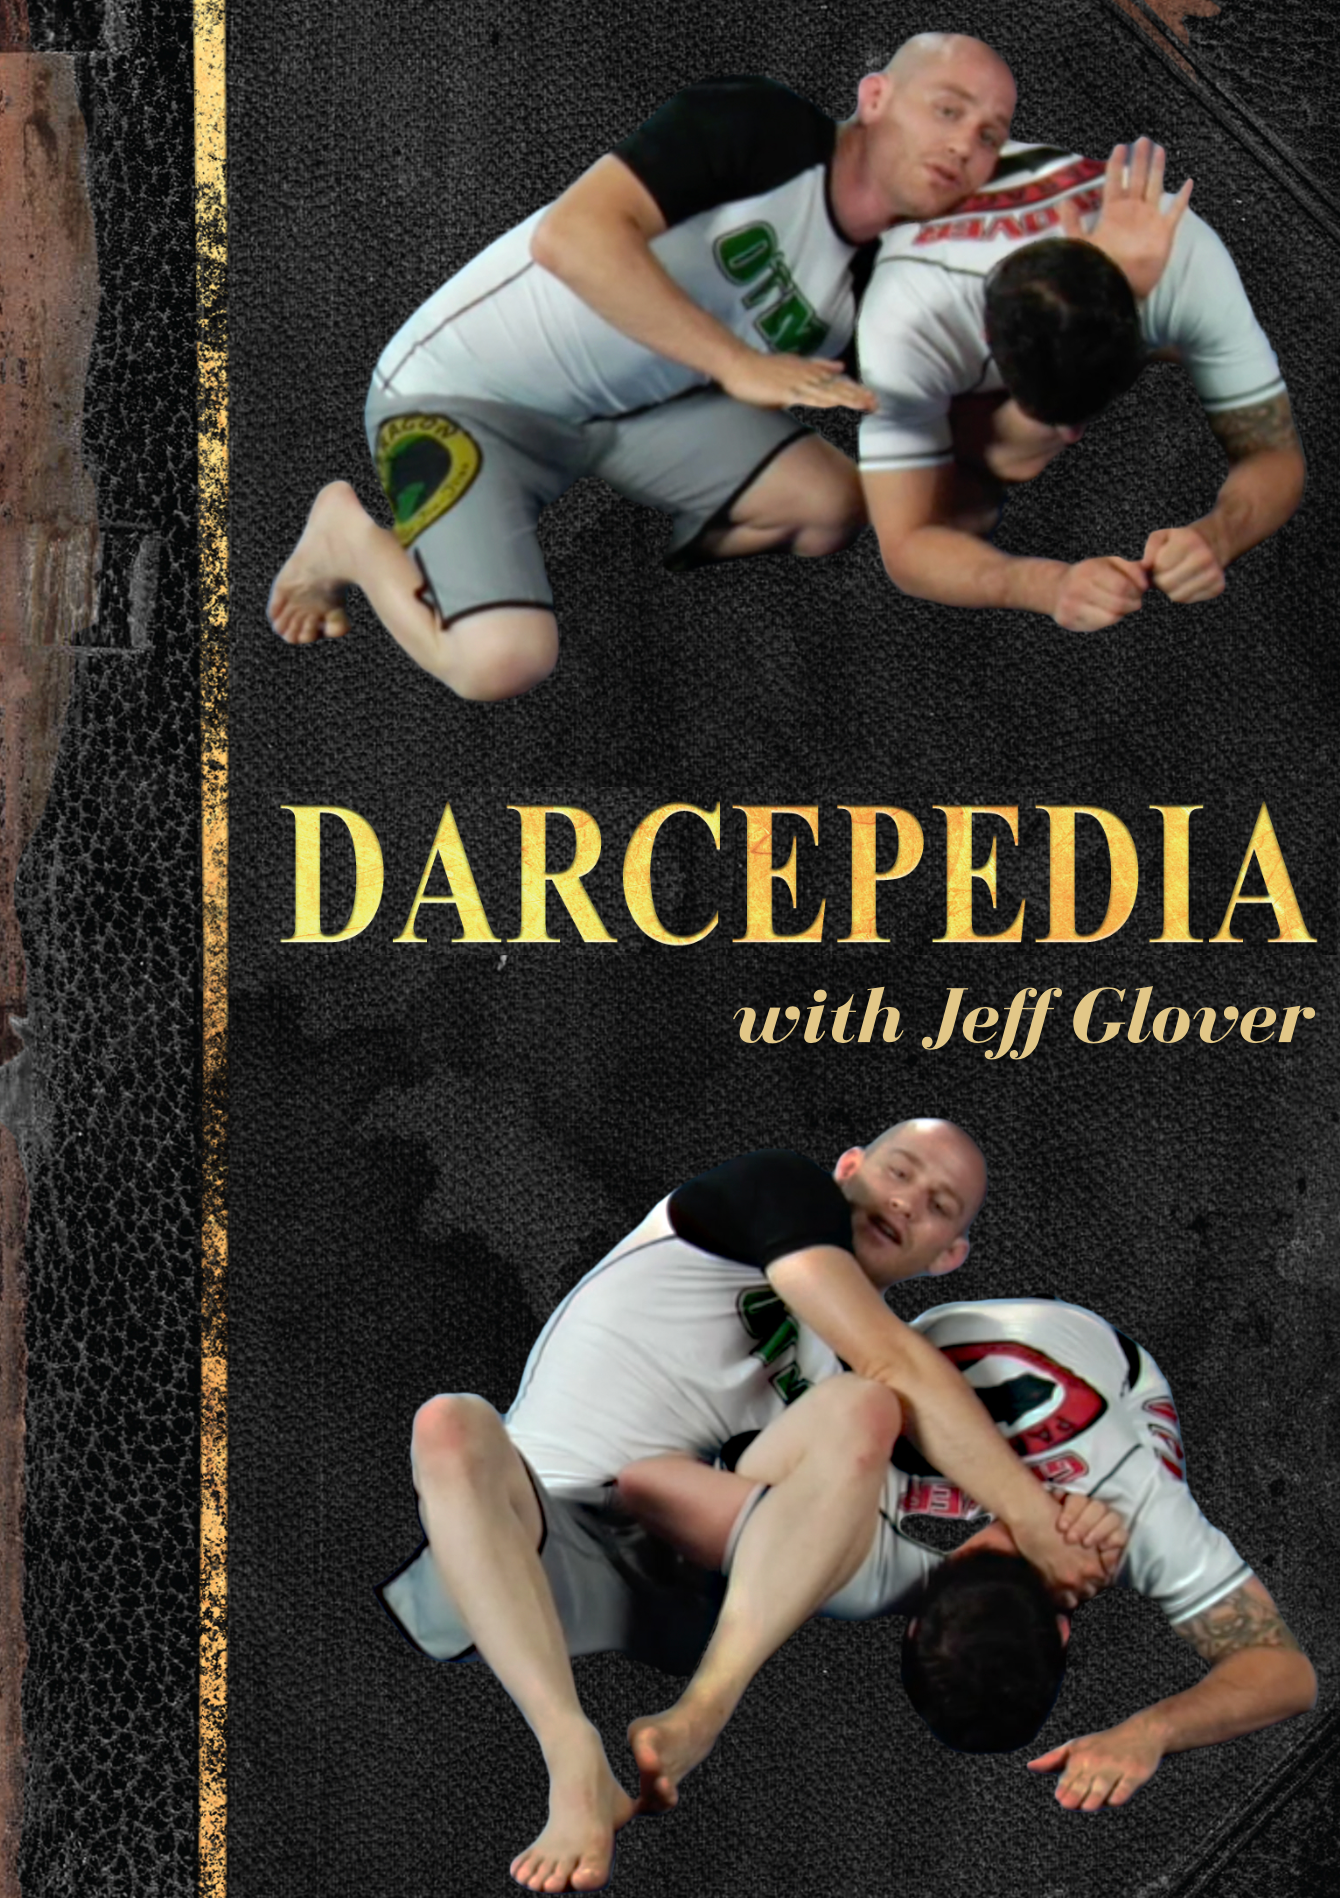 Serie Darcepedia de Jeff Glover (bajo demanda)